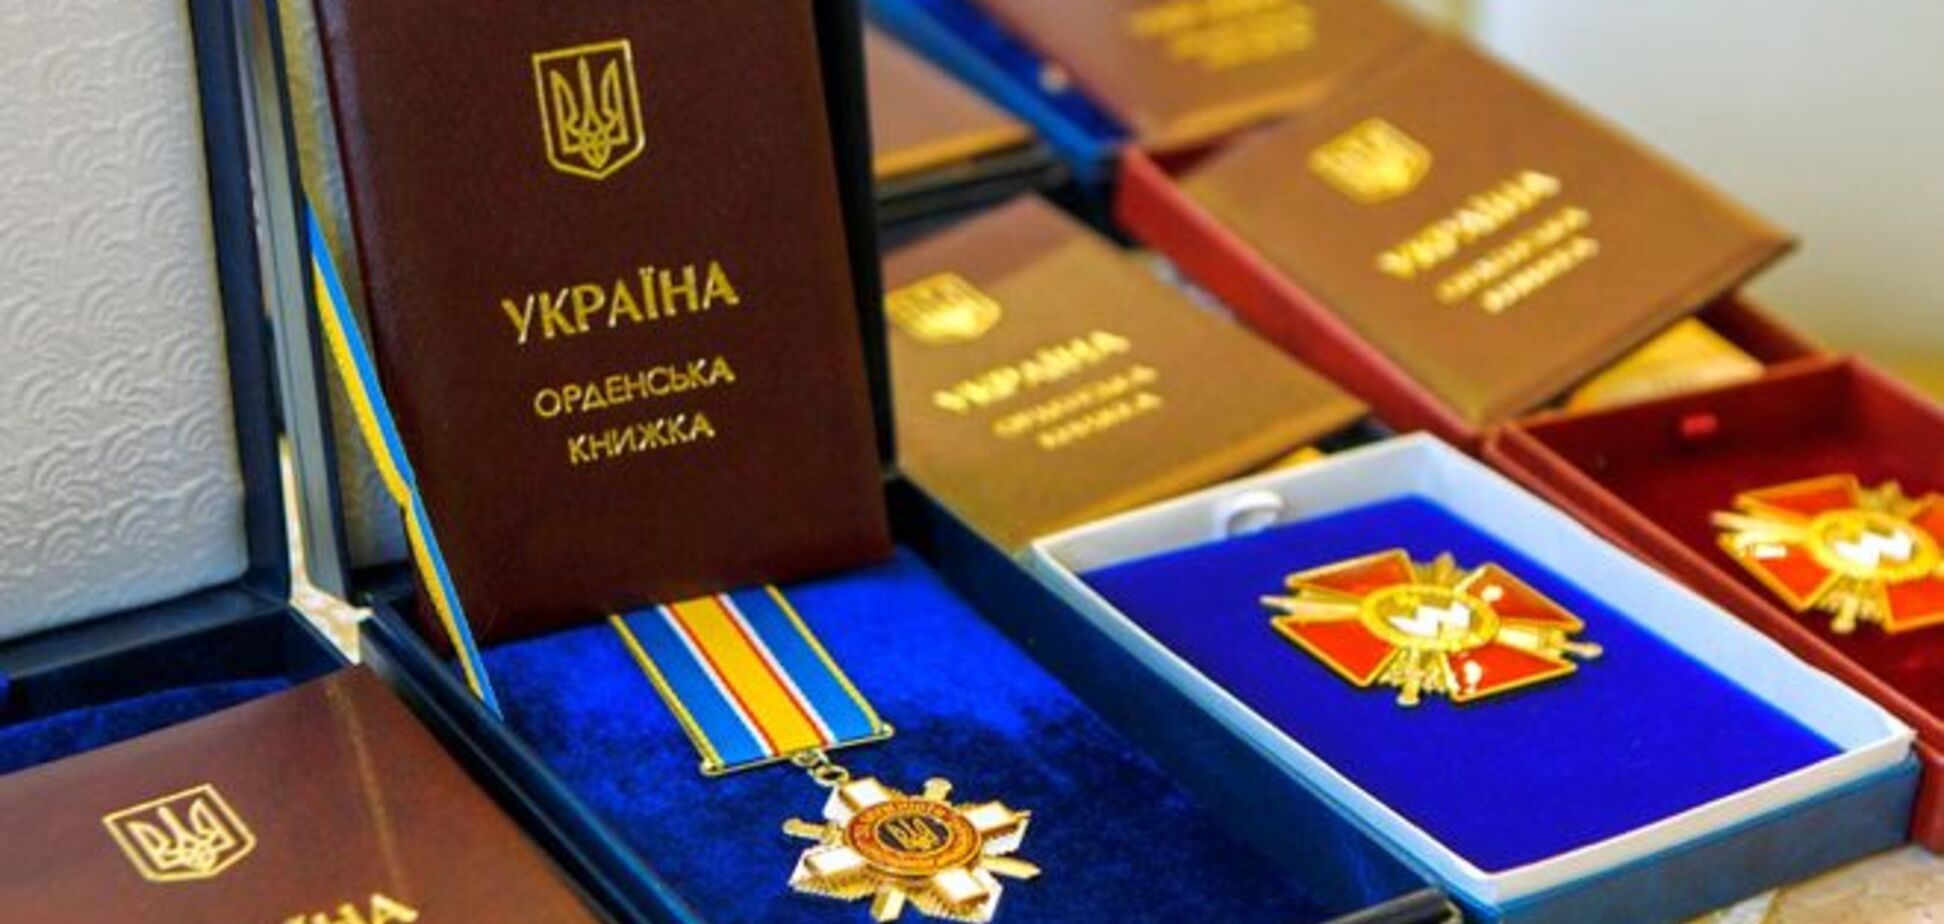 Порошенко наградил посмертно 220 бойцов АТО: полный список